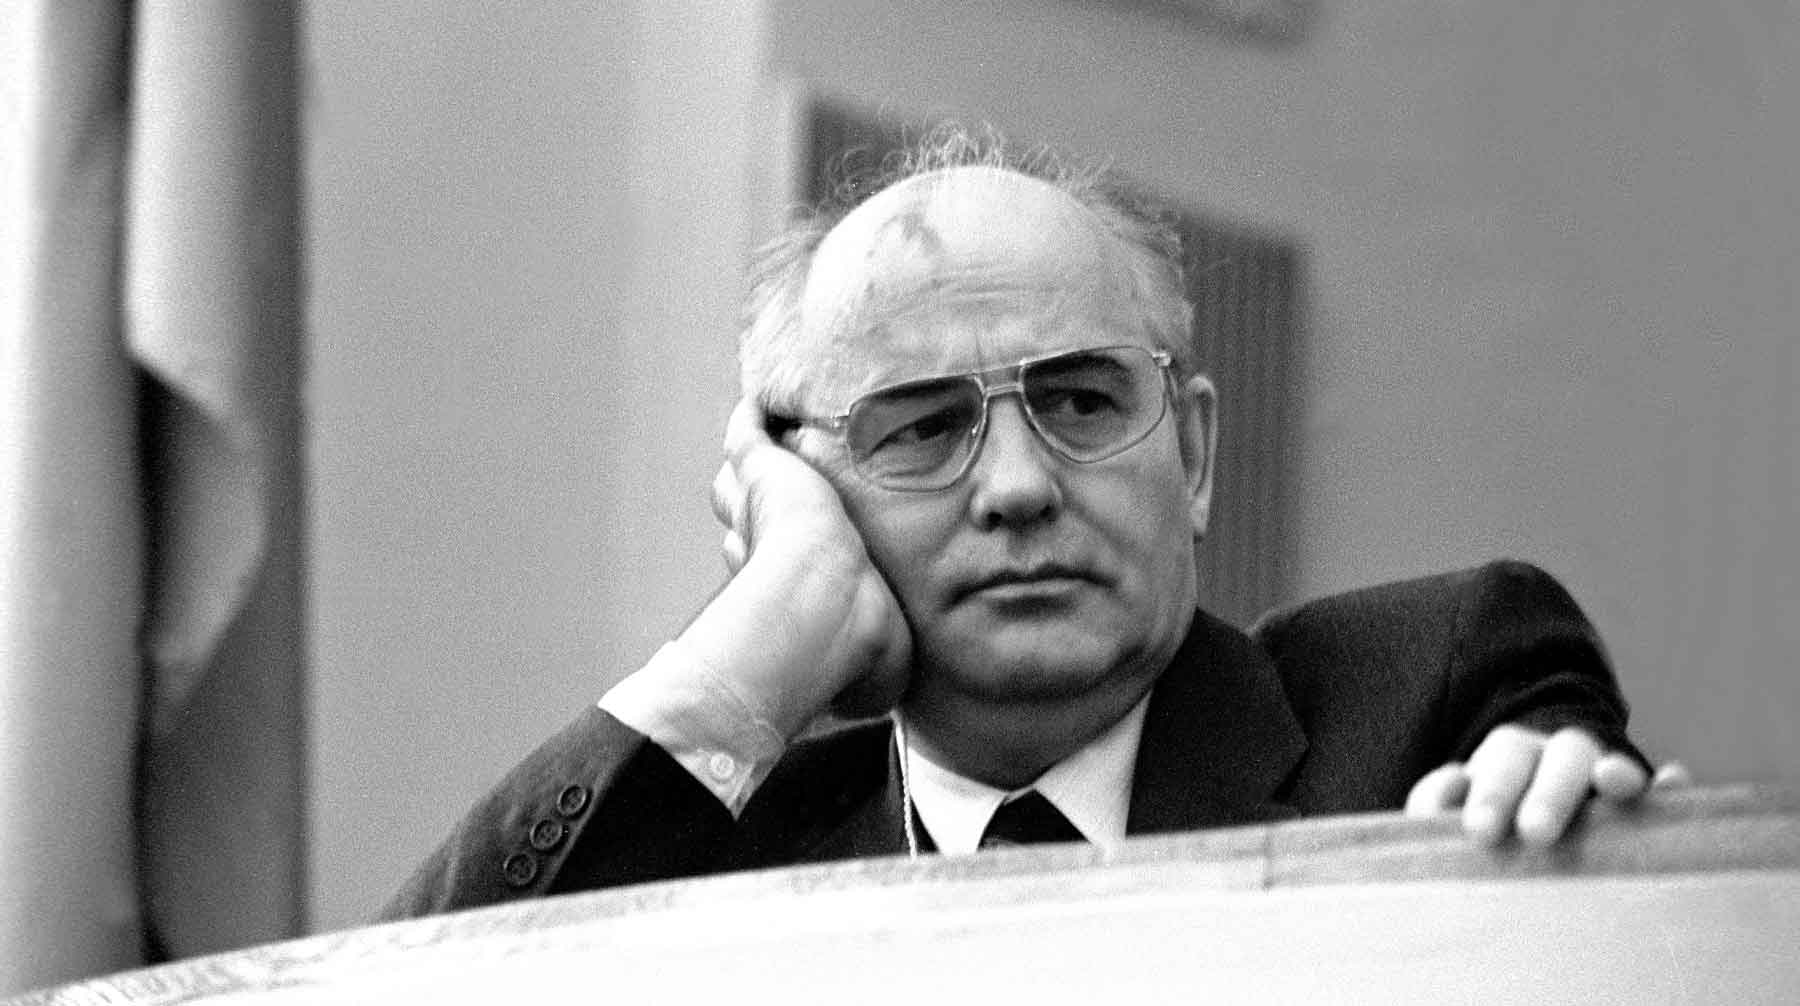 Горбачев И Путин Фото